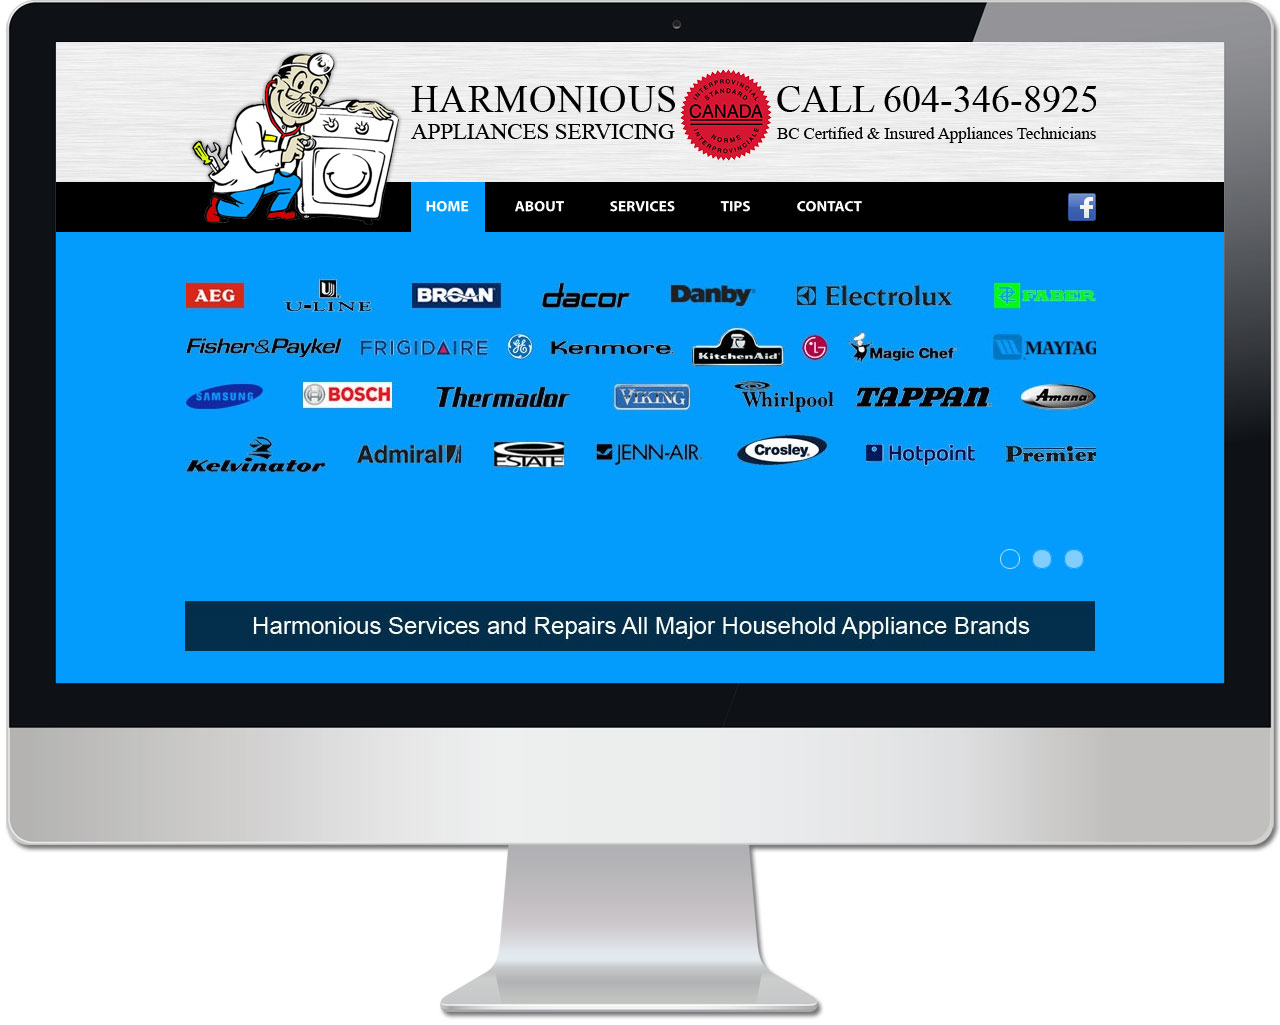 Harmonious Appliances Servicing Website